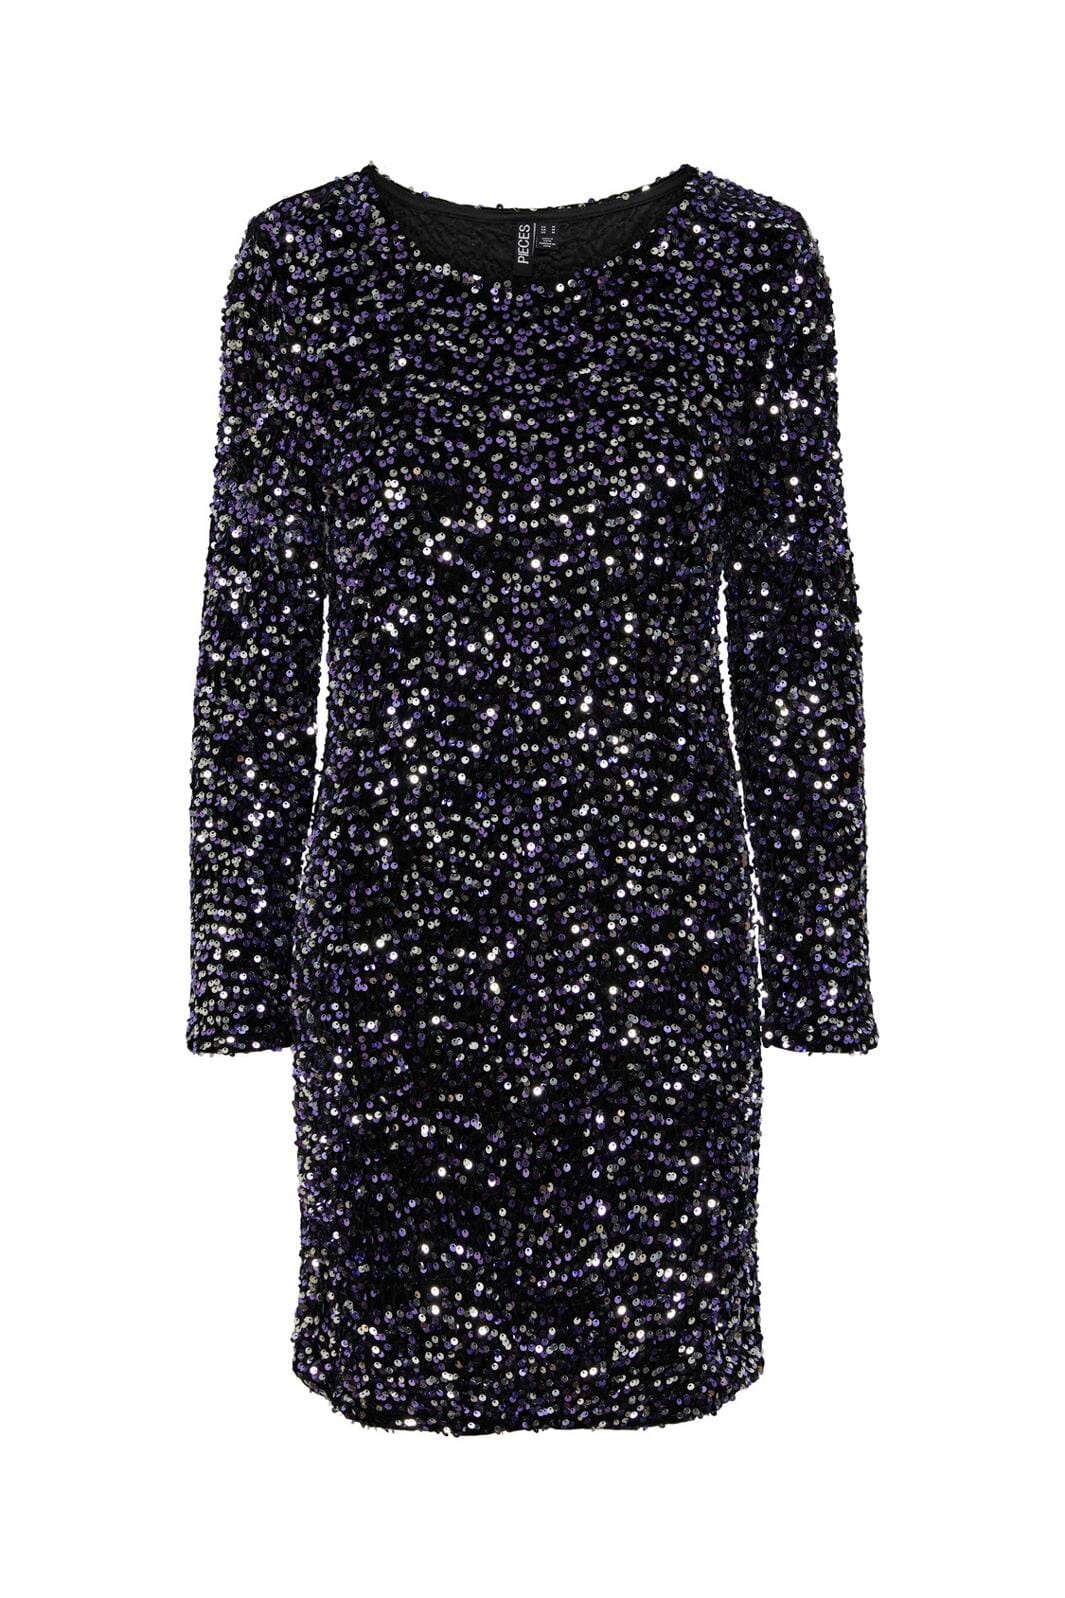 Pieces, Pckam Ls New Dress, Black Purple silver sequins